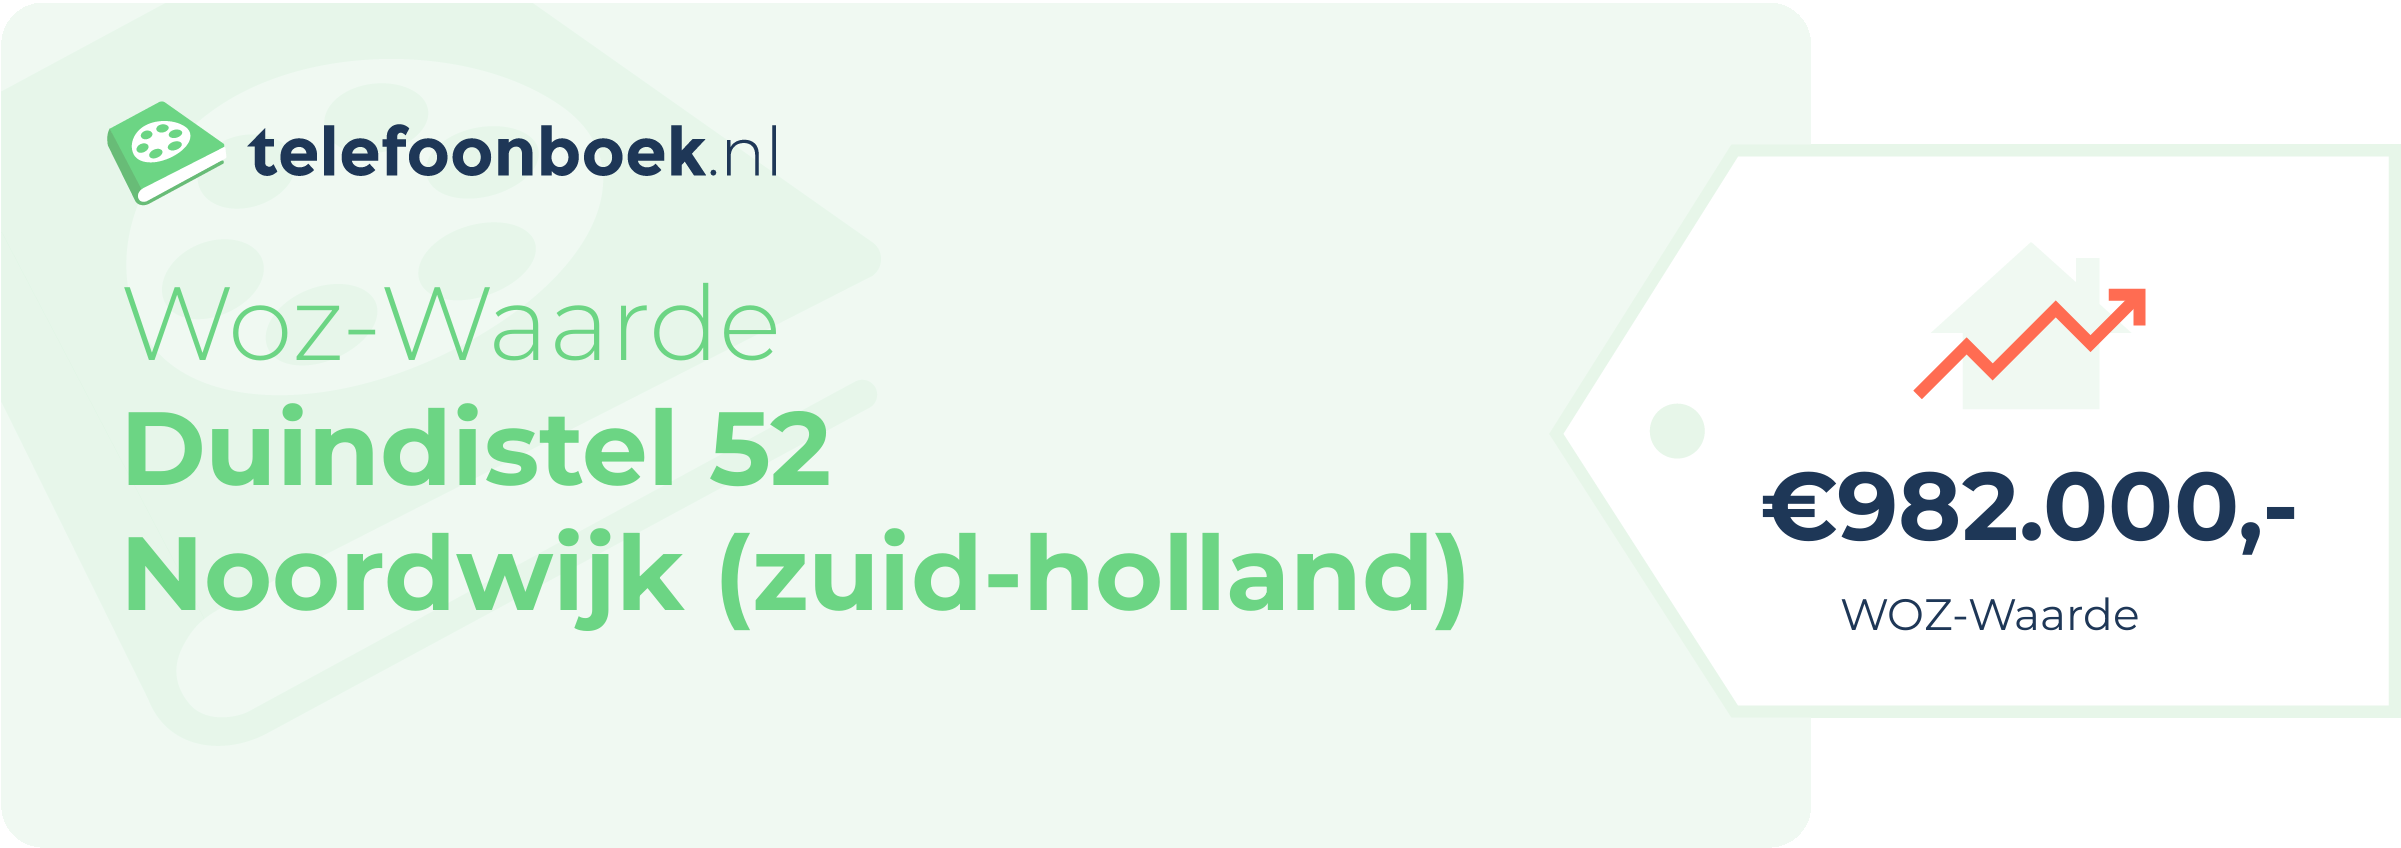 WOZ-waarde Duindistel 52 Noordwijk (Zuid-Holland)